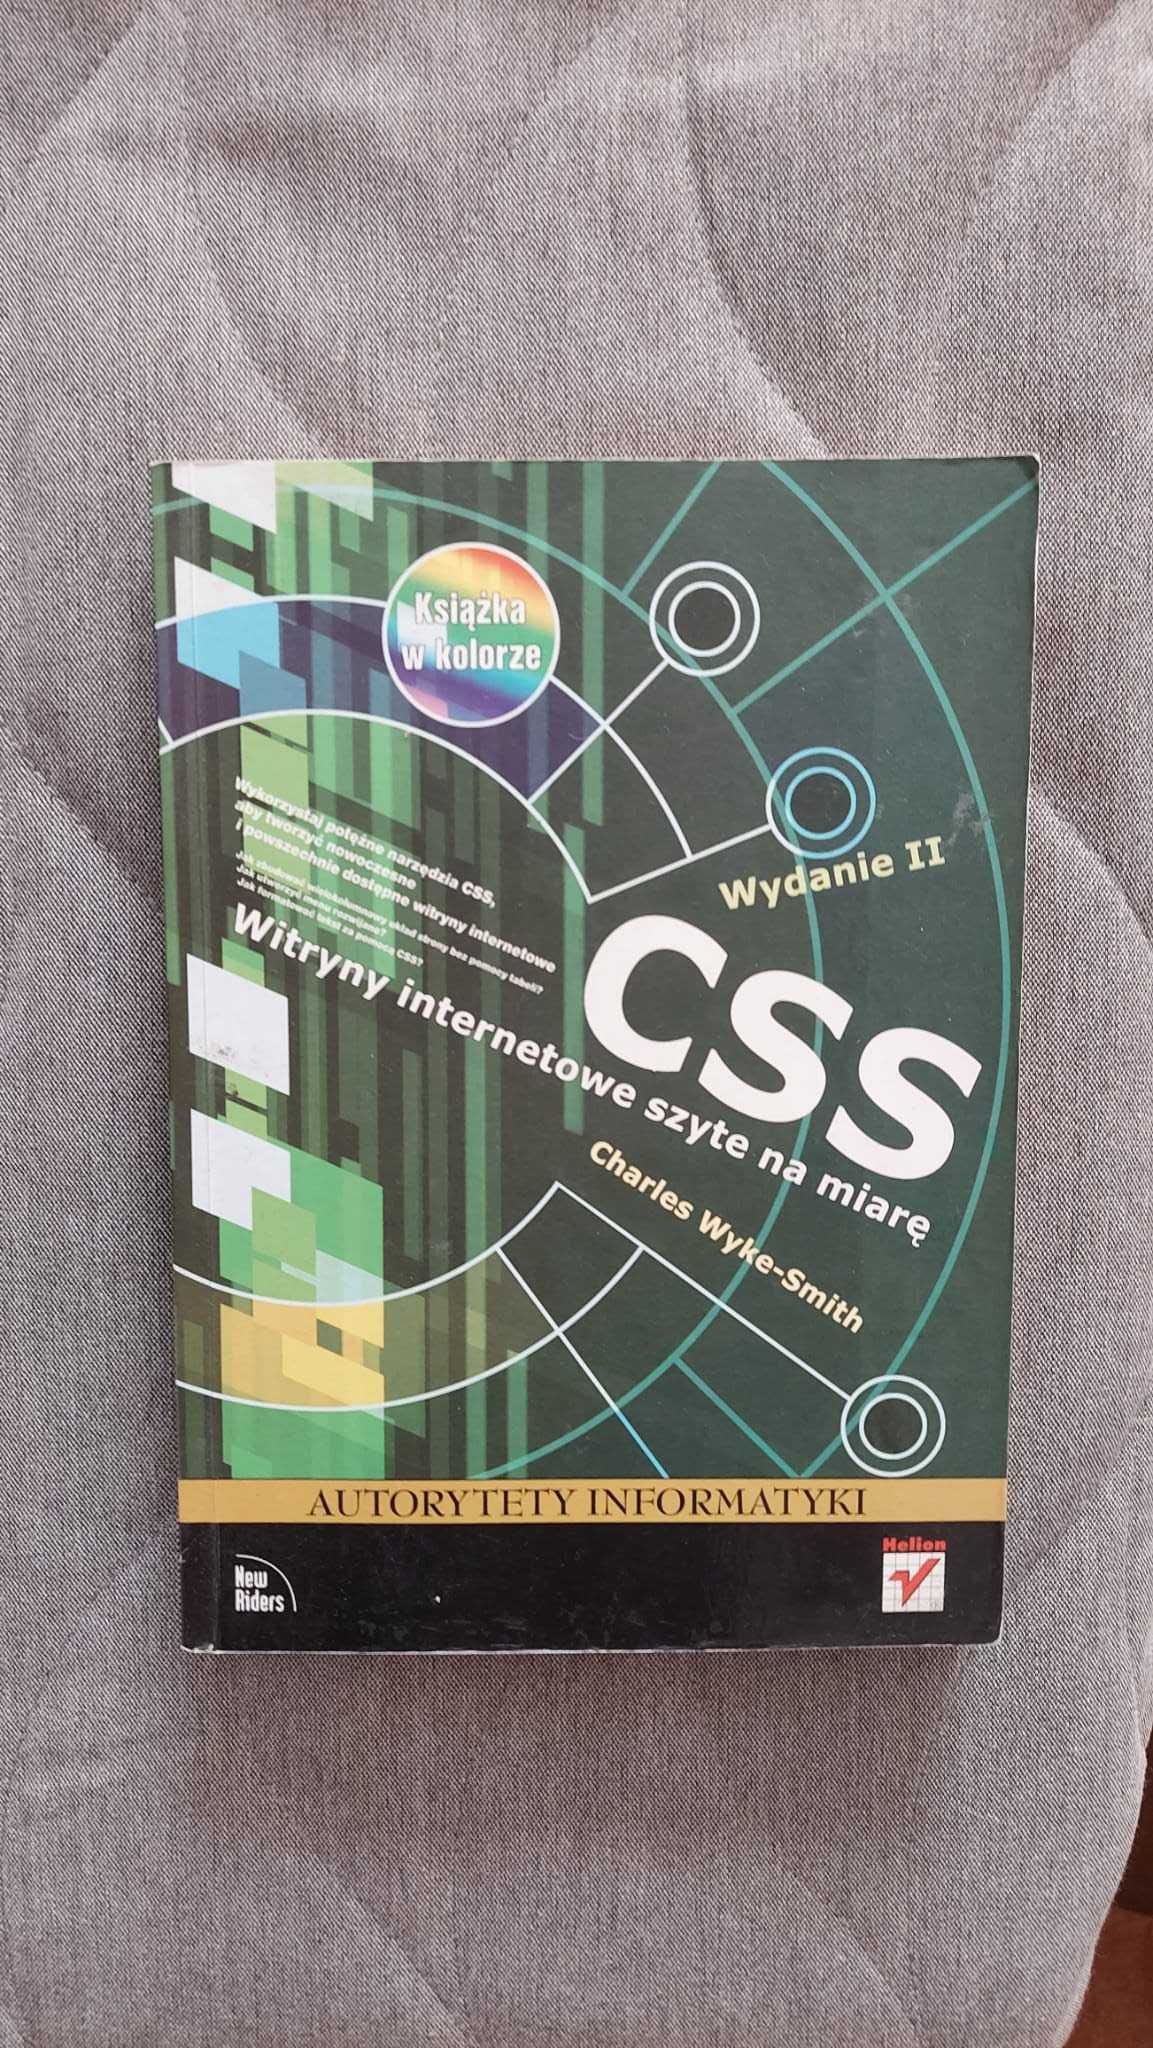 CSS - Witryny internetowe szyte na miarę - Charles Wyke-Smith - Helios